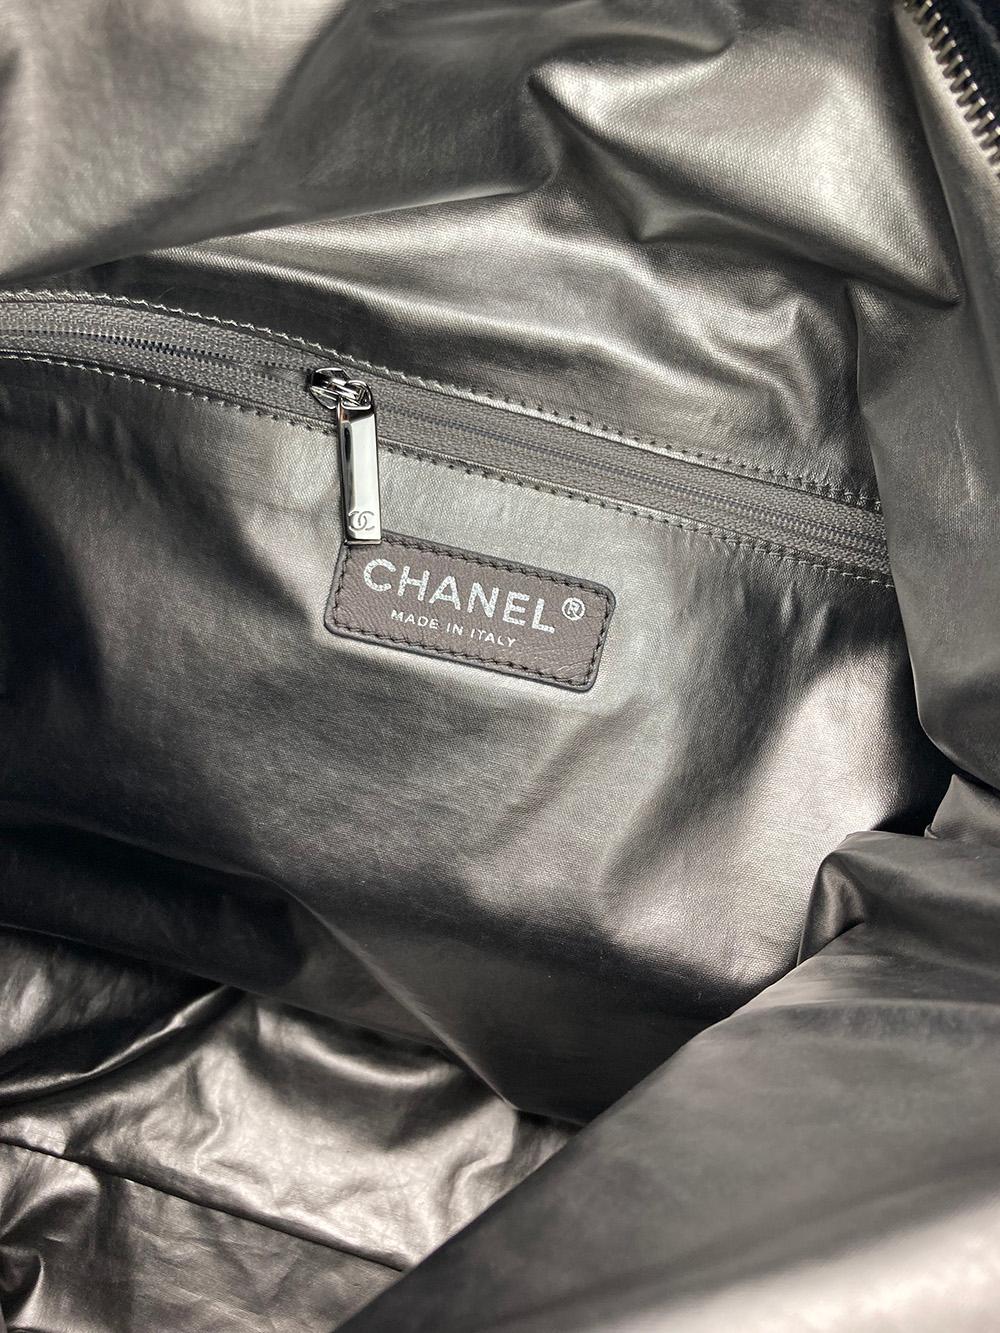 Chanel Paris-Moscow Red Square Kremlin Large Shoulder Bag 5